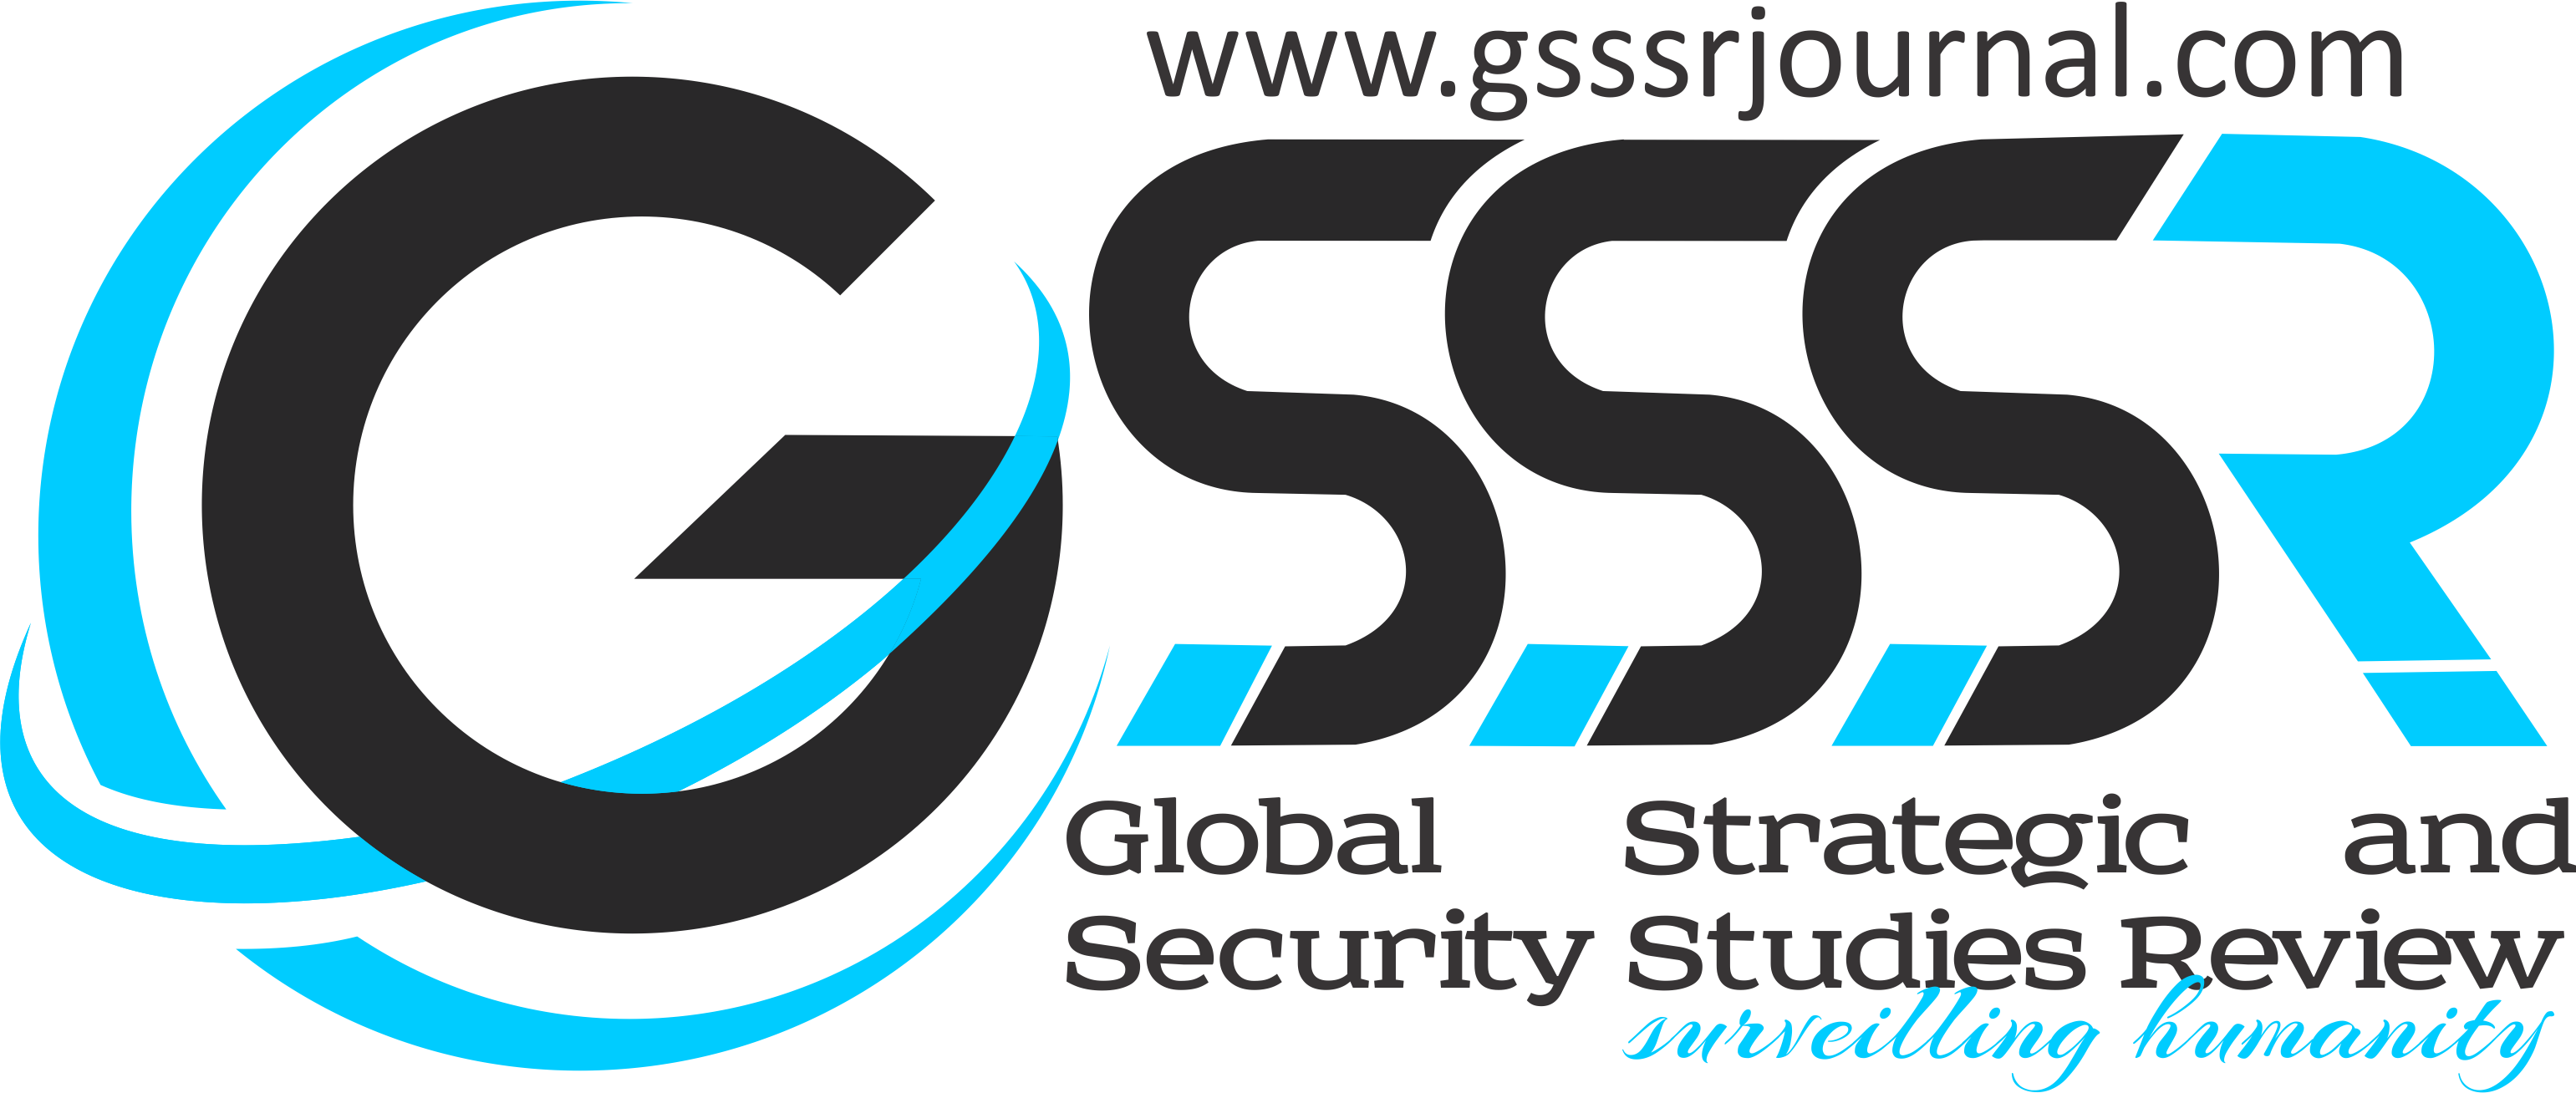 gsssr Logo